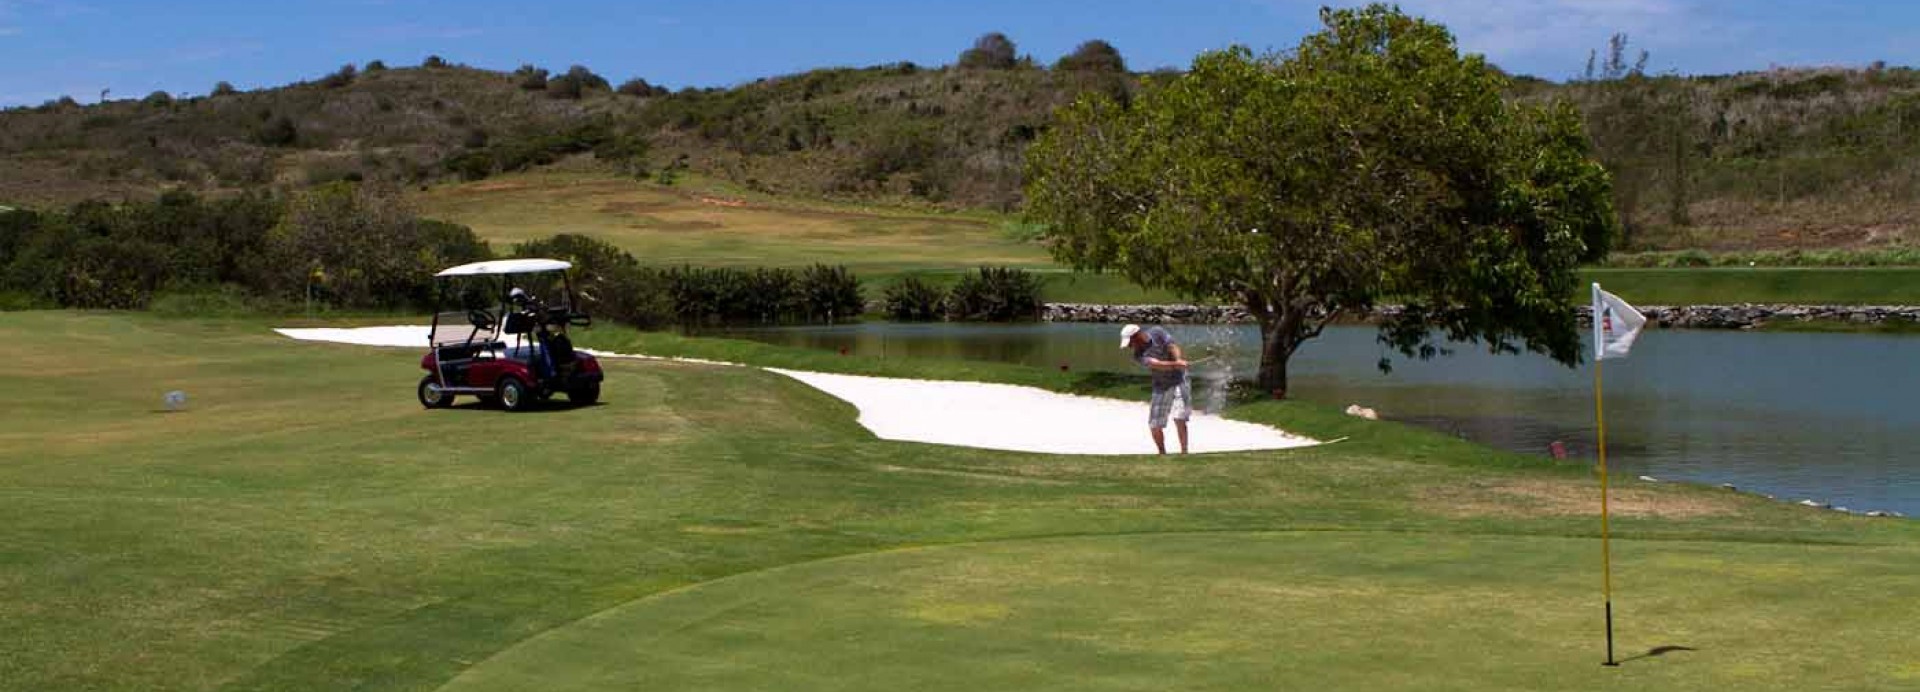 BÚZIOS GOLF CLUB & RESORT  | Golfové zájezdy, golfová dovolená, luxusní golf